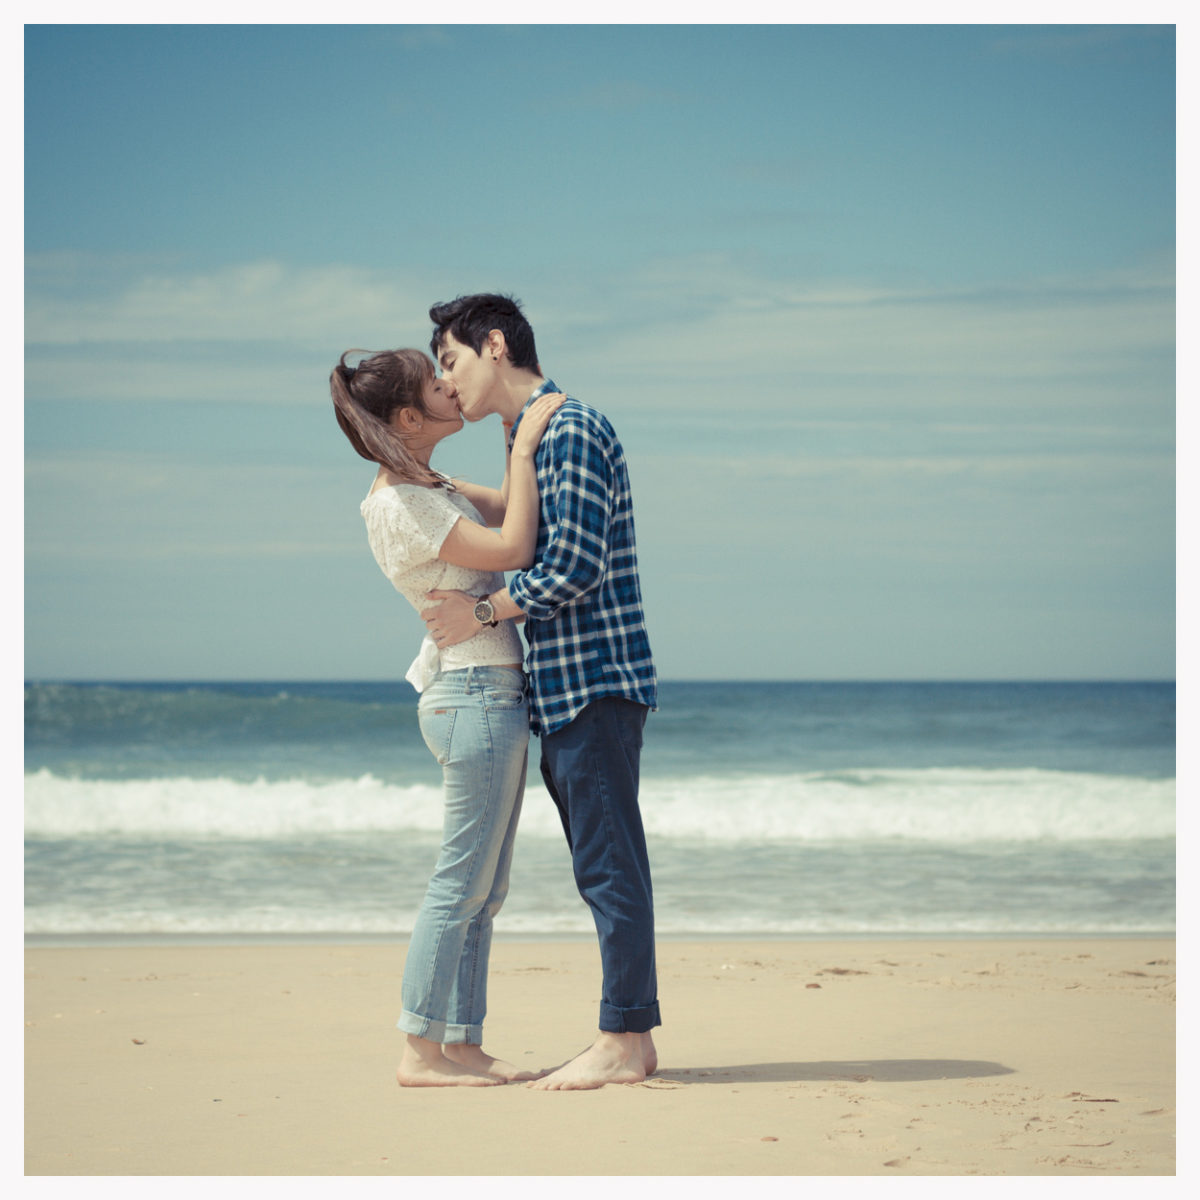 sebastien-huruguen-photographe-gironde-couple-sembrassant-sur-la-plage-du-cap-ferret-les-pieds-dans-le-sable